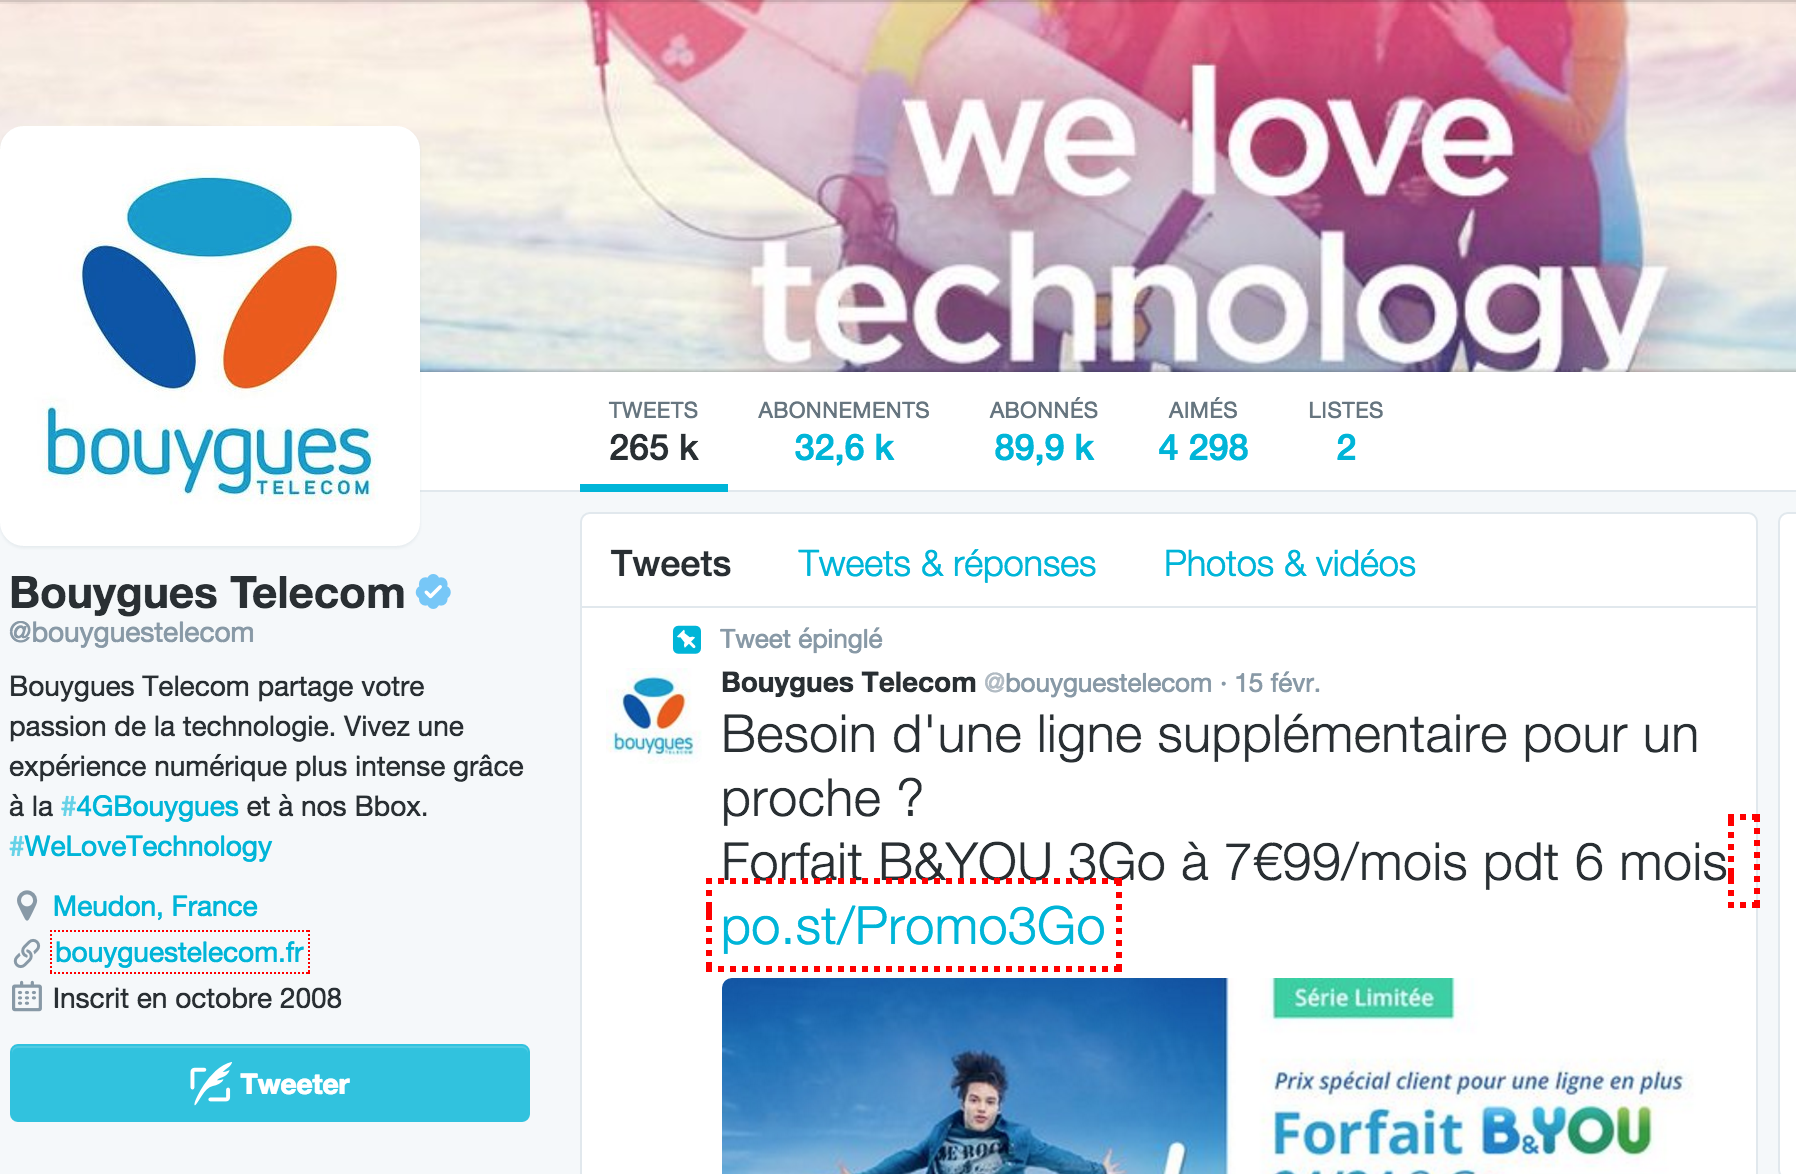 Cliquez pour contacter le support Bouygues via Twitter